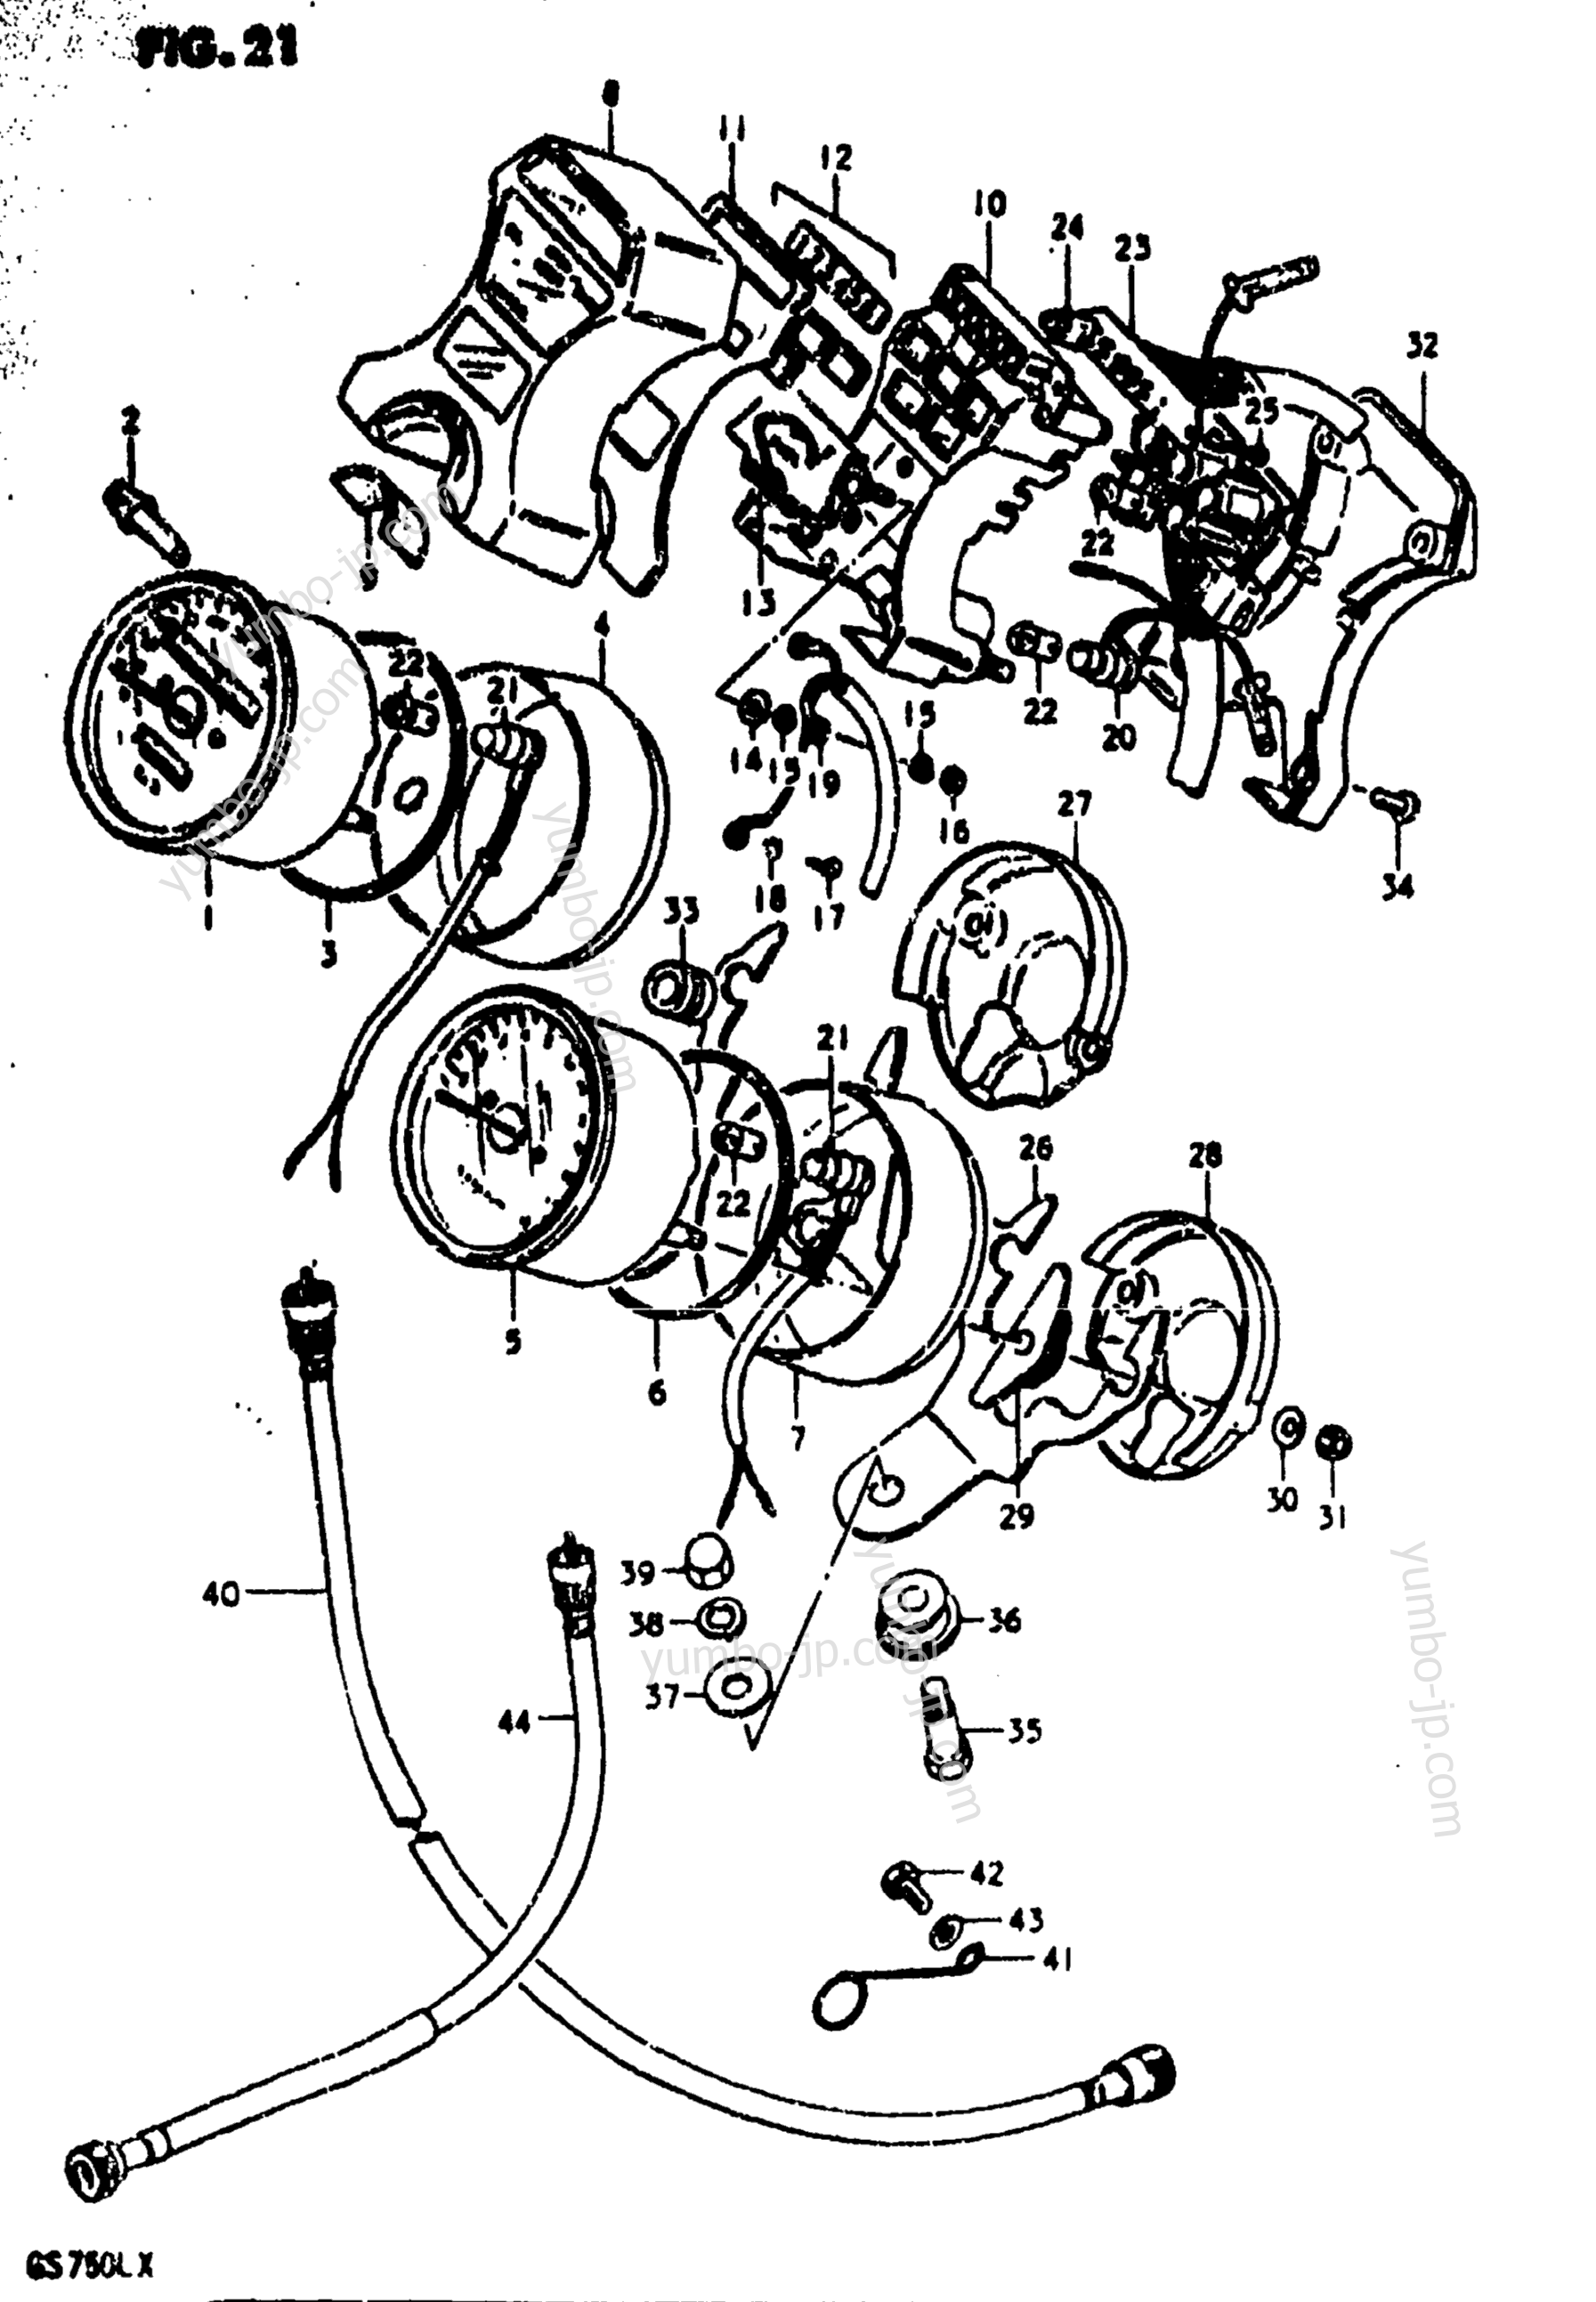 Speedometer - Tachometer for motorcycles SUZUKI GS750L 1981 year